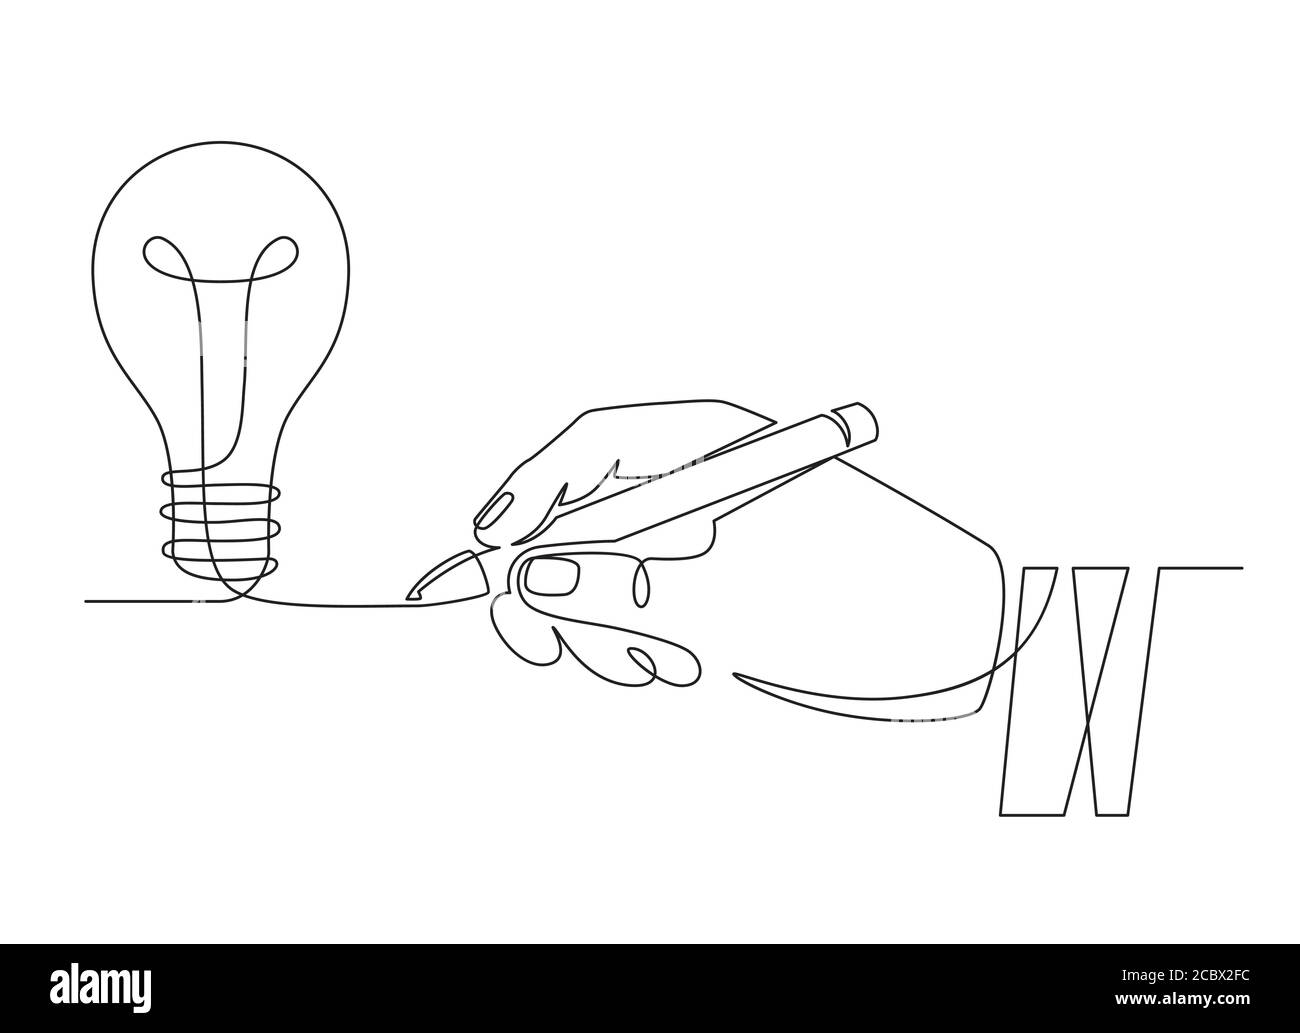 Glühbirne Idee. Skizze Hand mit Stift Zeichnung eine Linie Glühbirne, Erfindung oder kreative Denken Symbol. Neues Projekt, Brainstorming Vektor-Konzept Stock Vektor